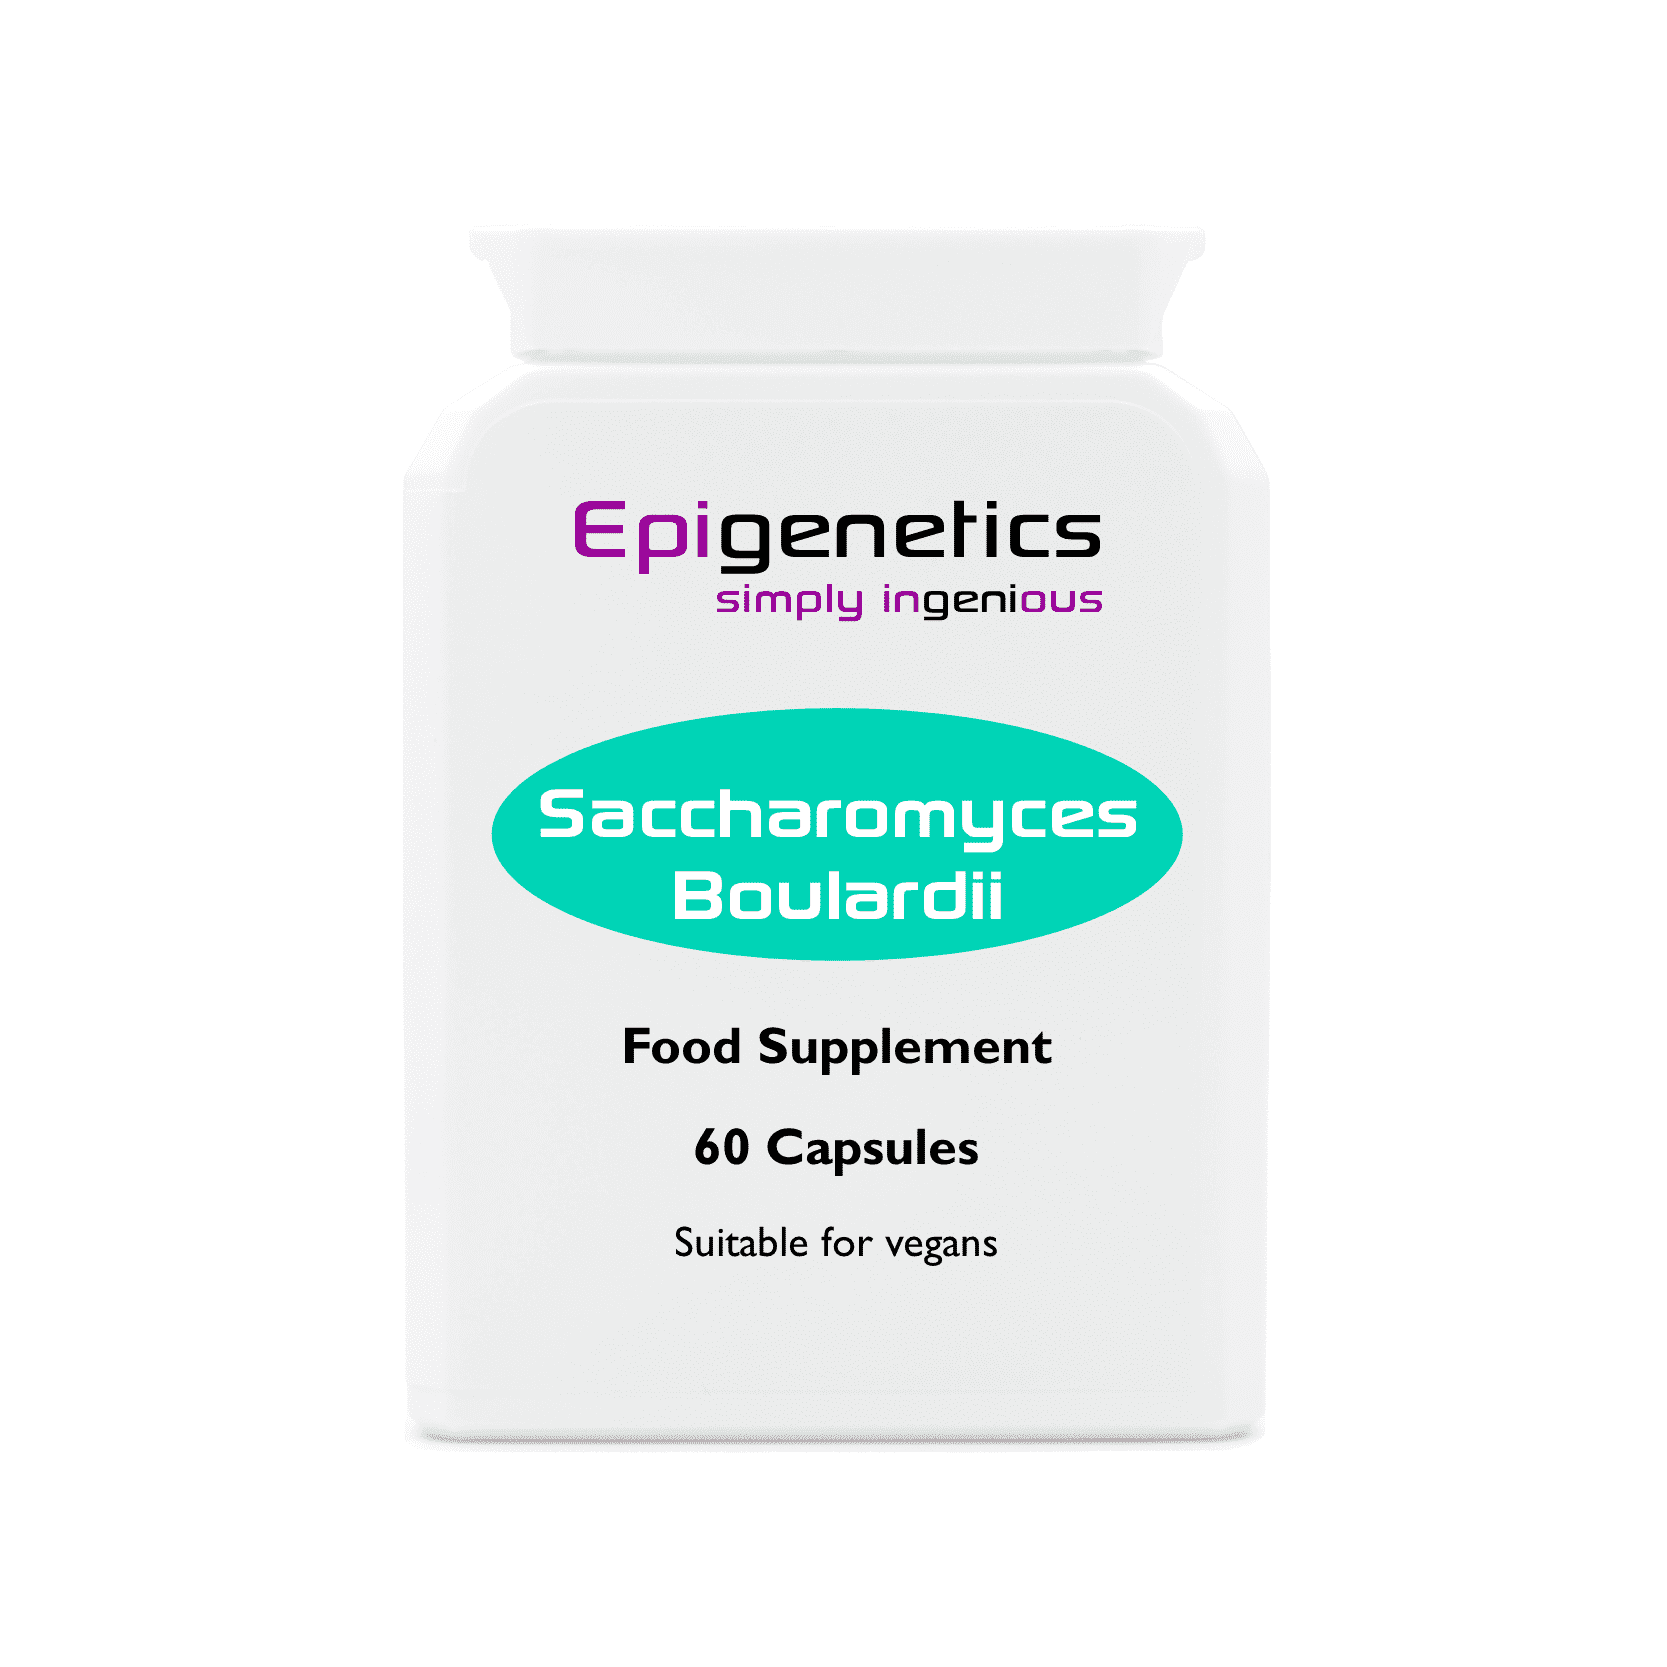 Saccharomyces Boulardii pack of 60 capsules - Epigenetics